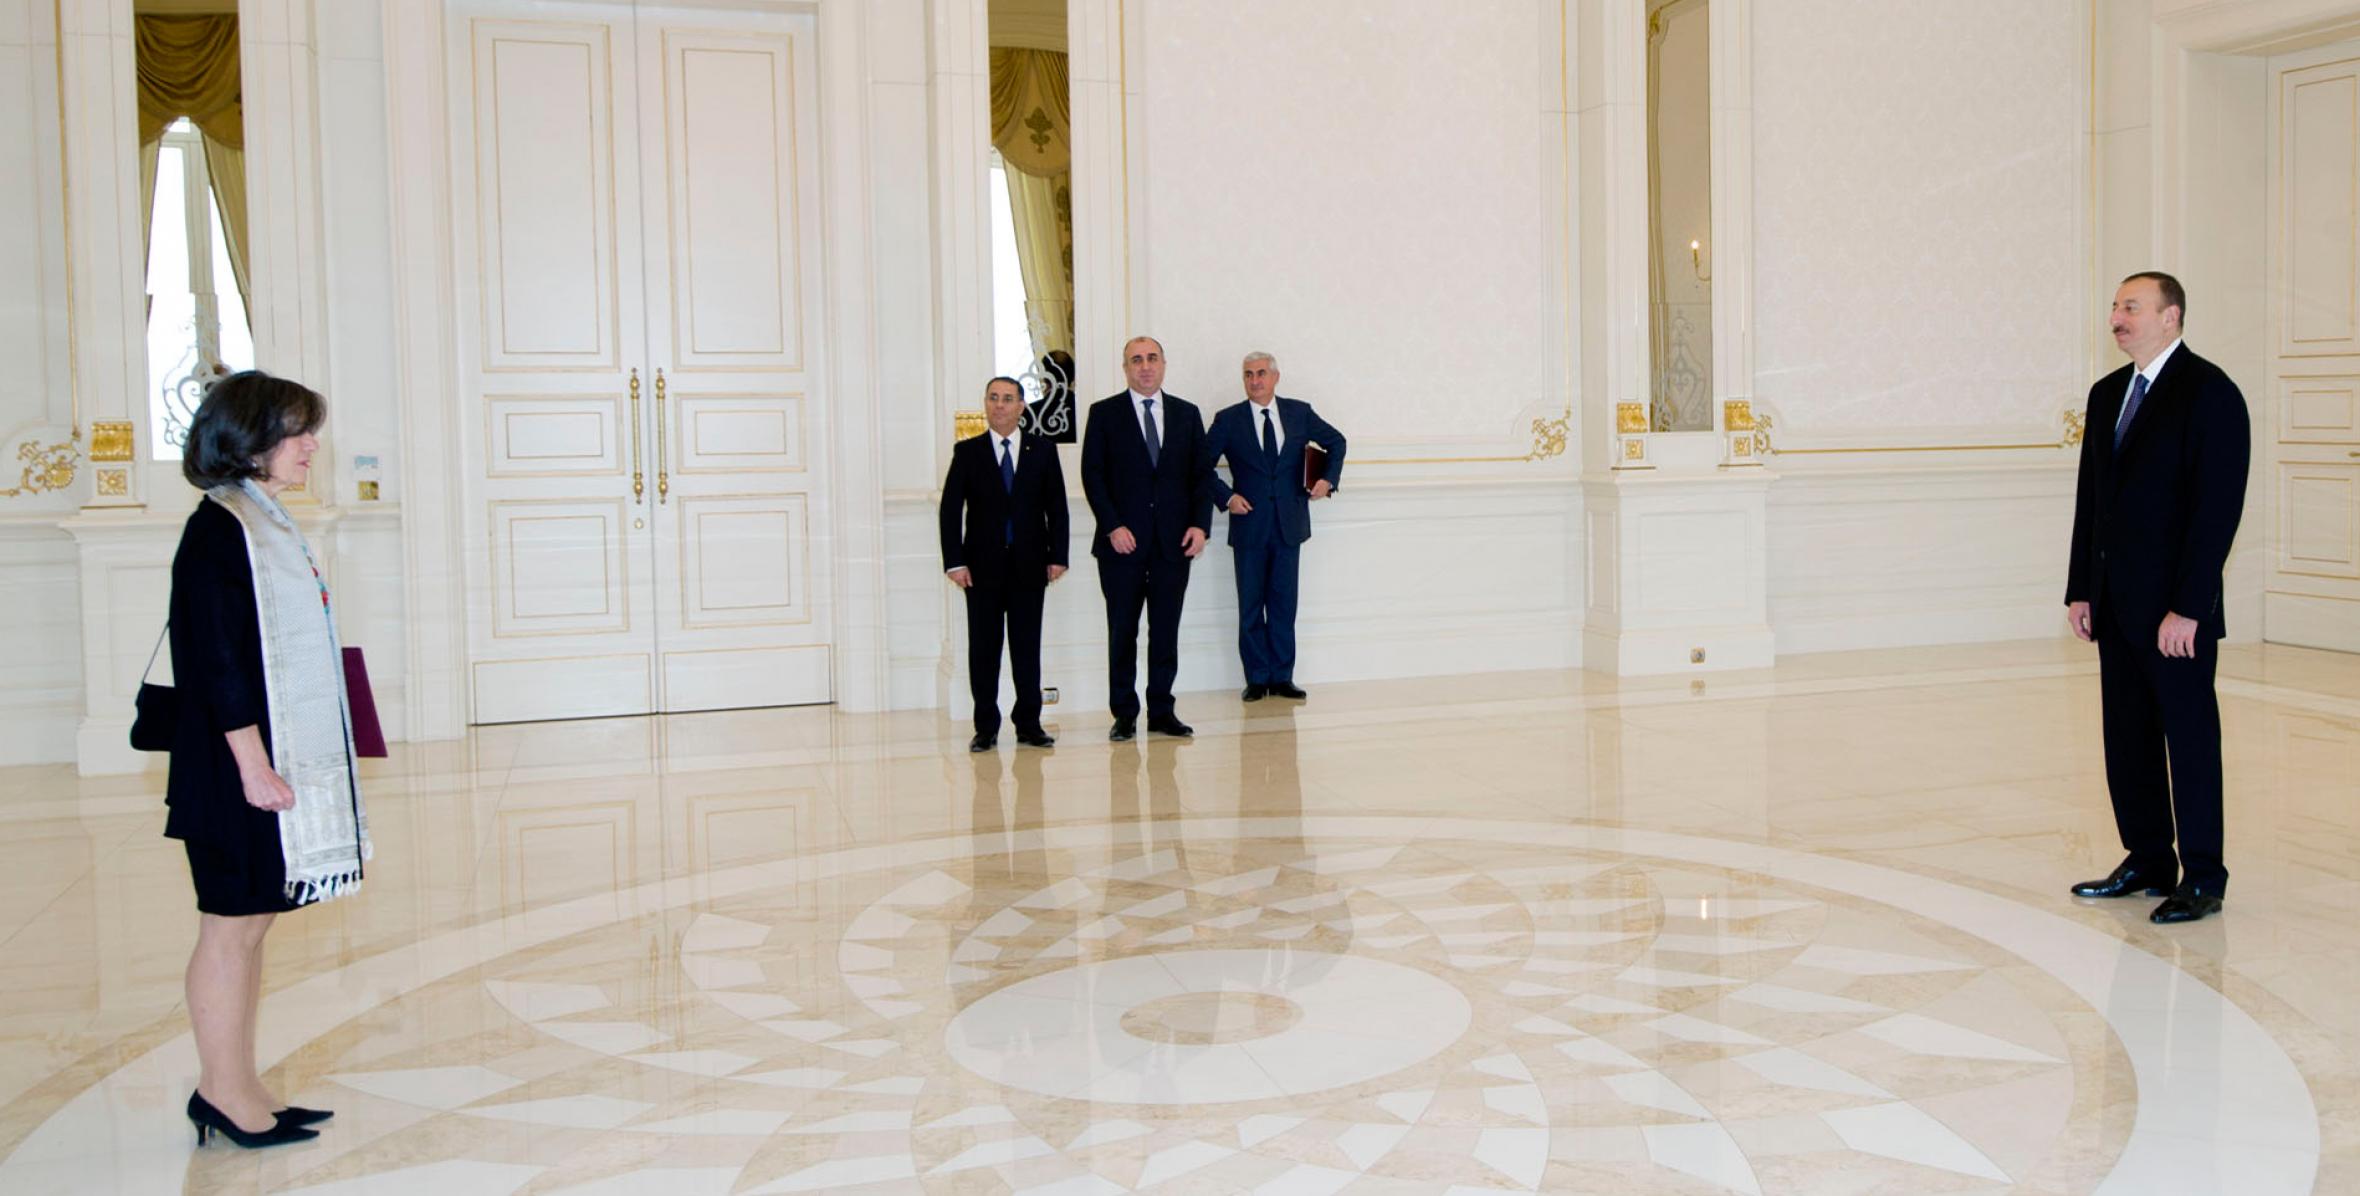 Ильхам Алиев принял верительные грамоты посла Португалии в Азербайджане Луизы Бастос де Алмейды